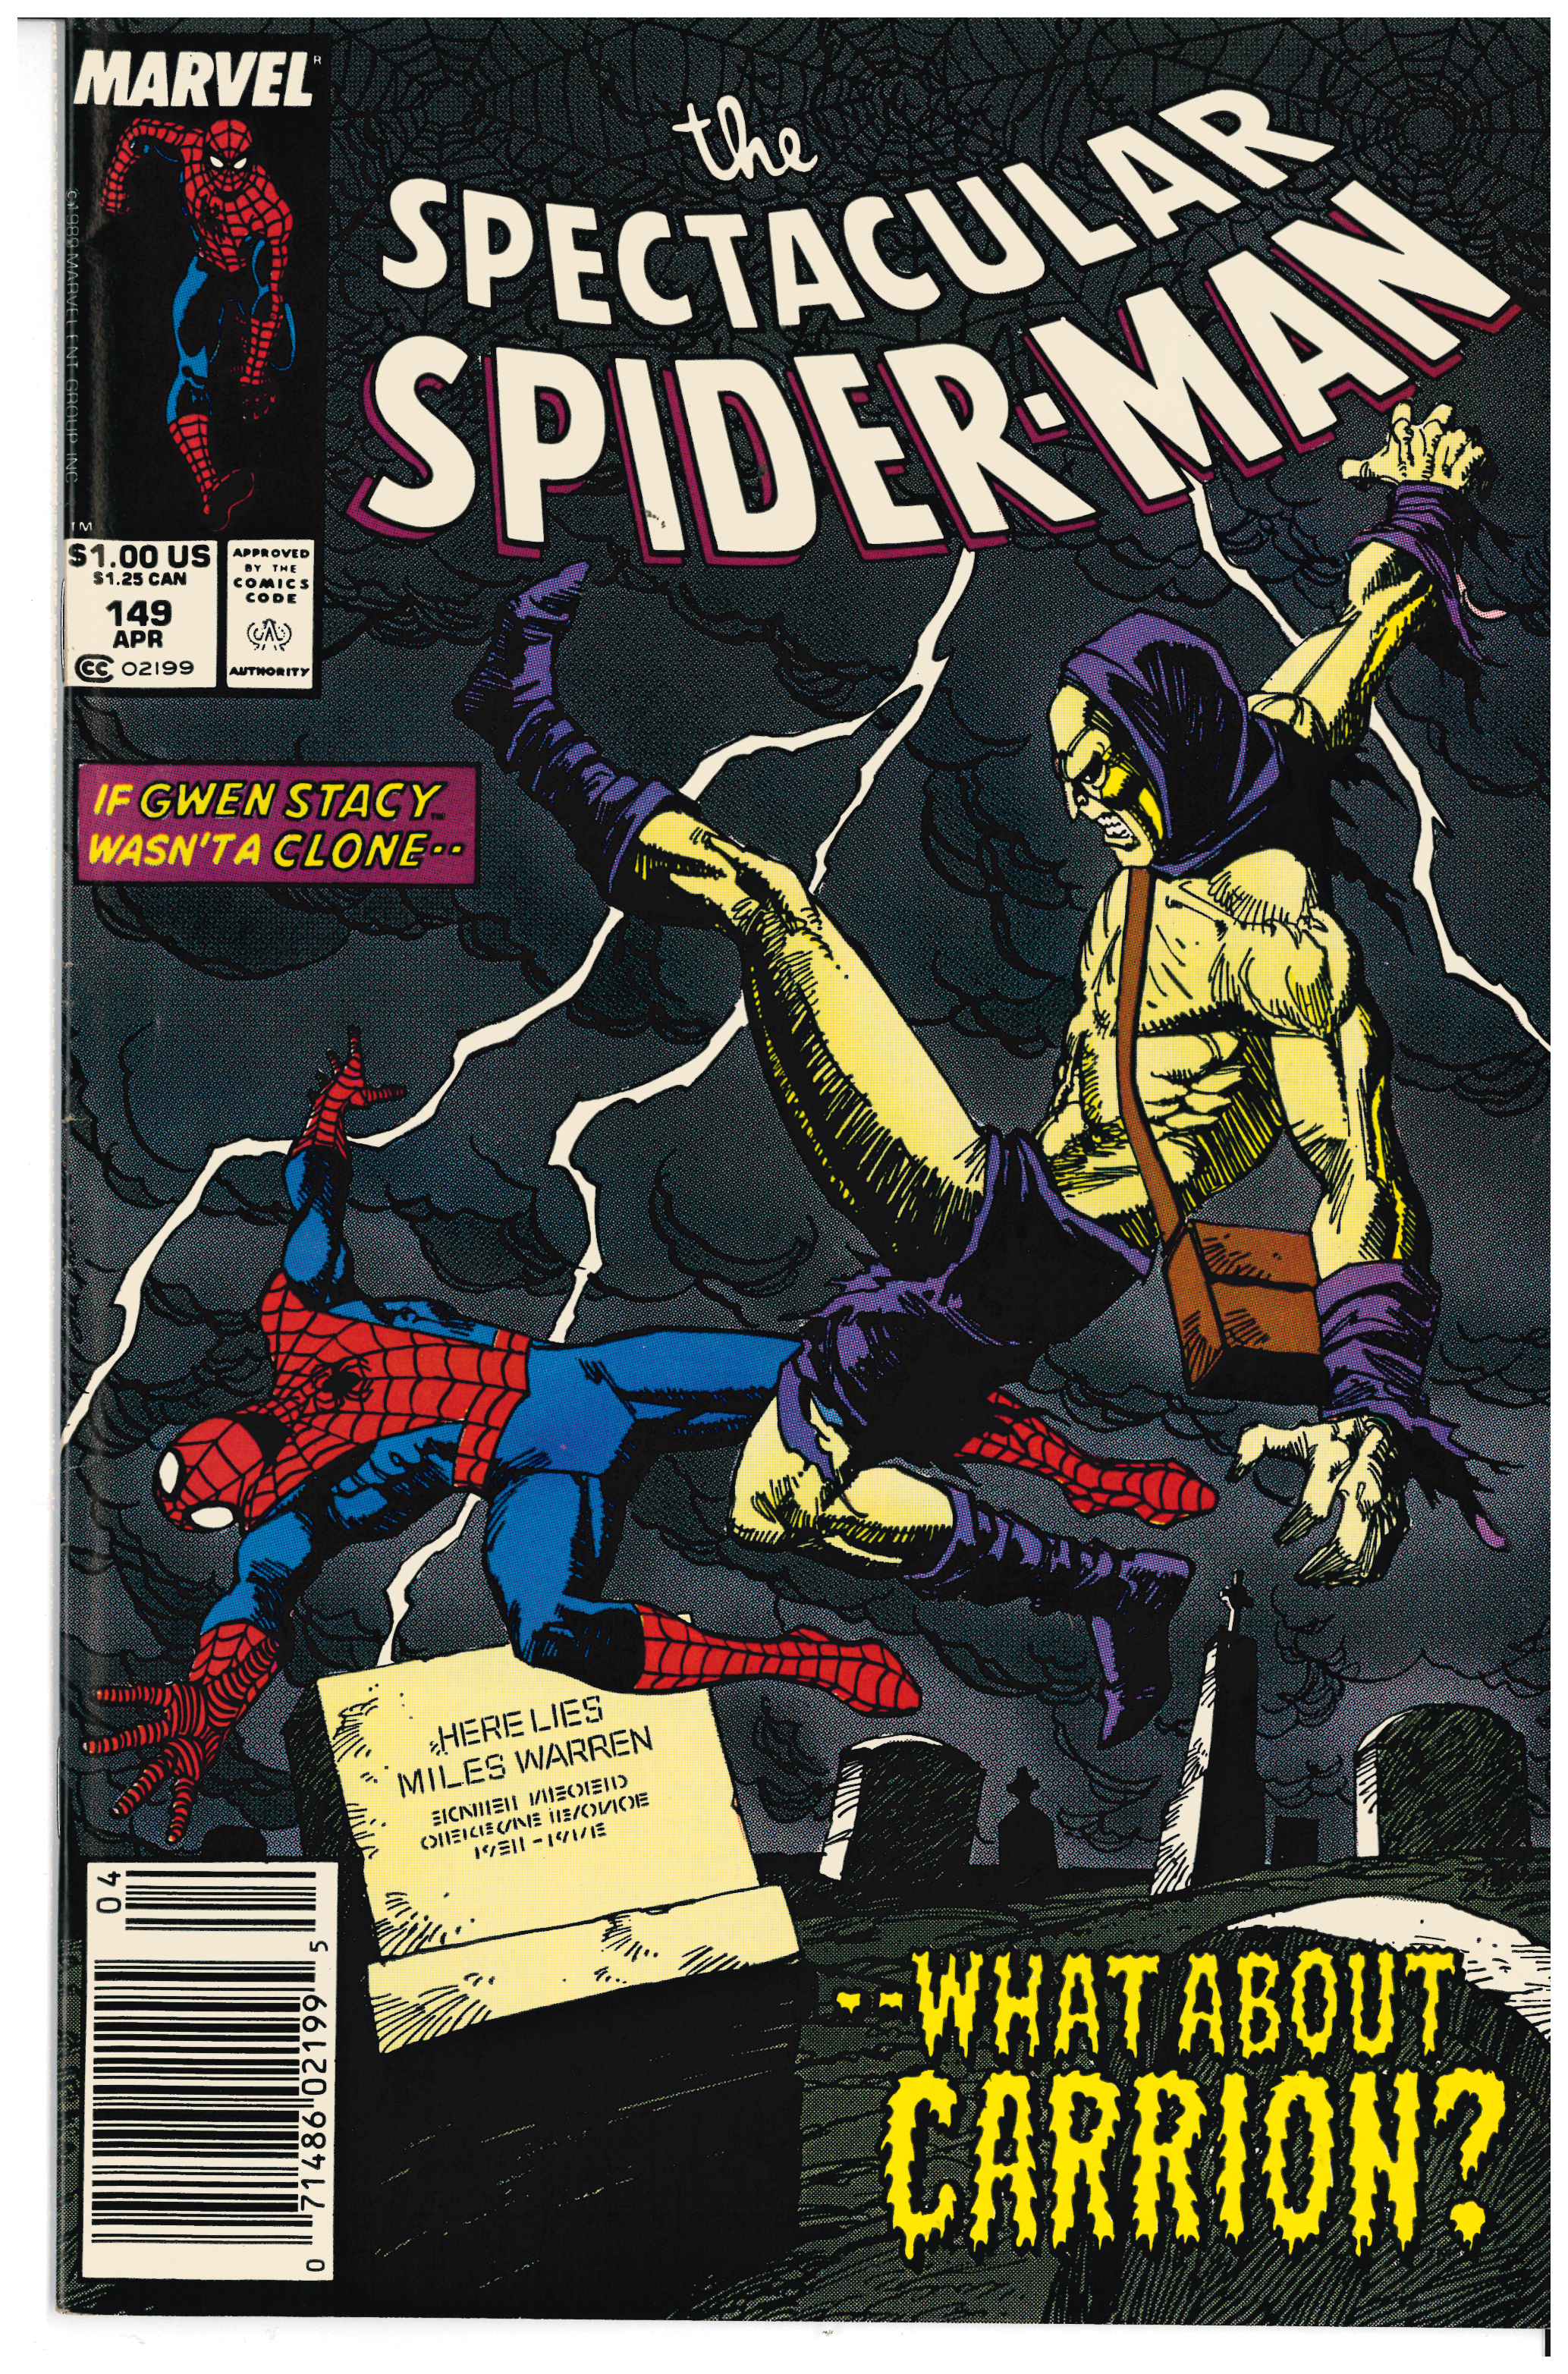 Specatular Spider-Man #149